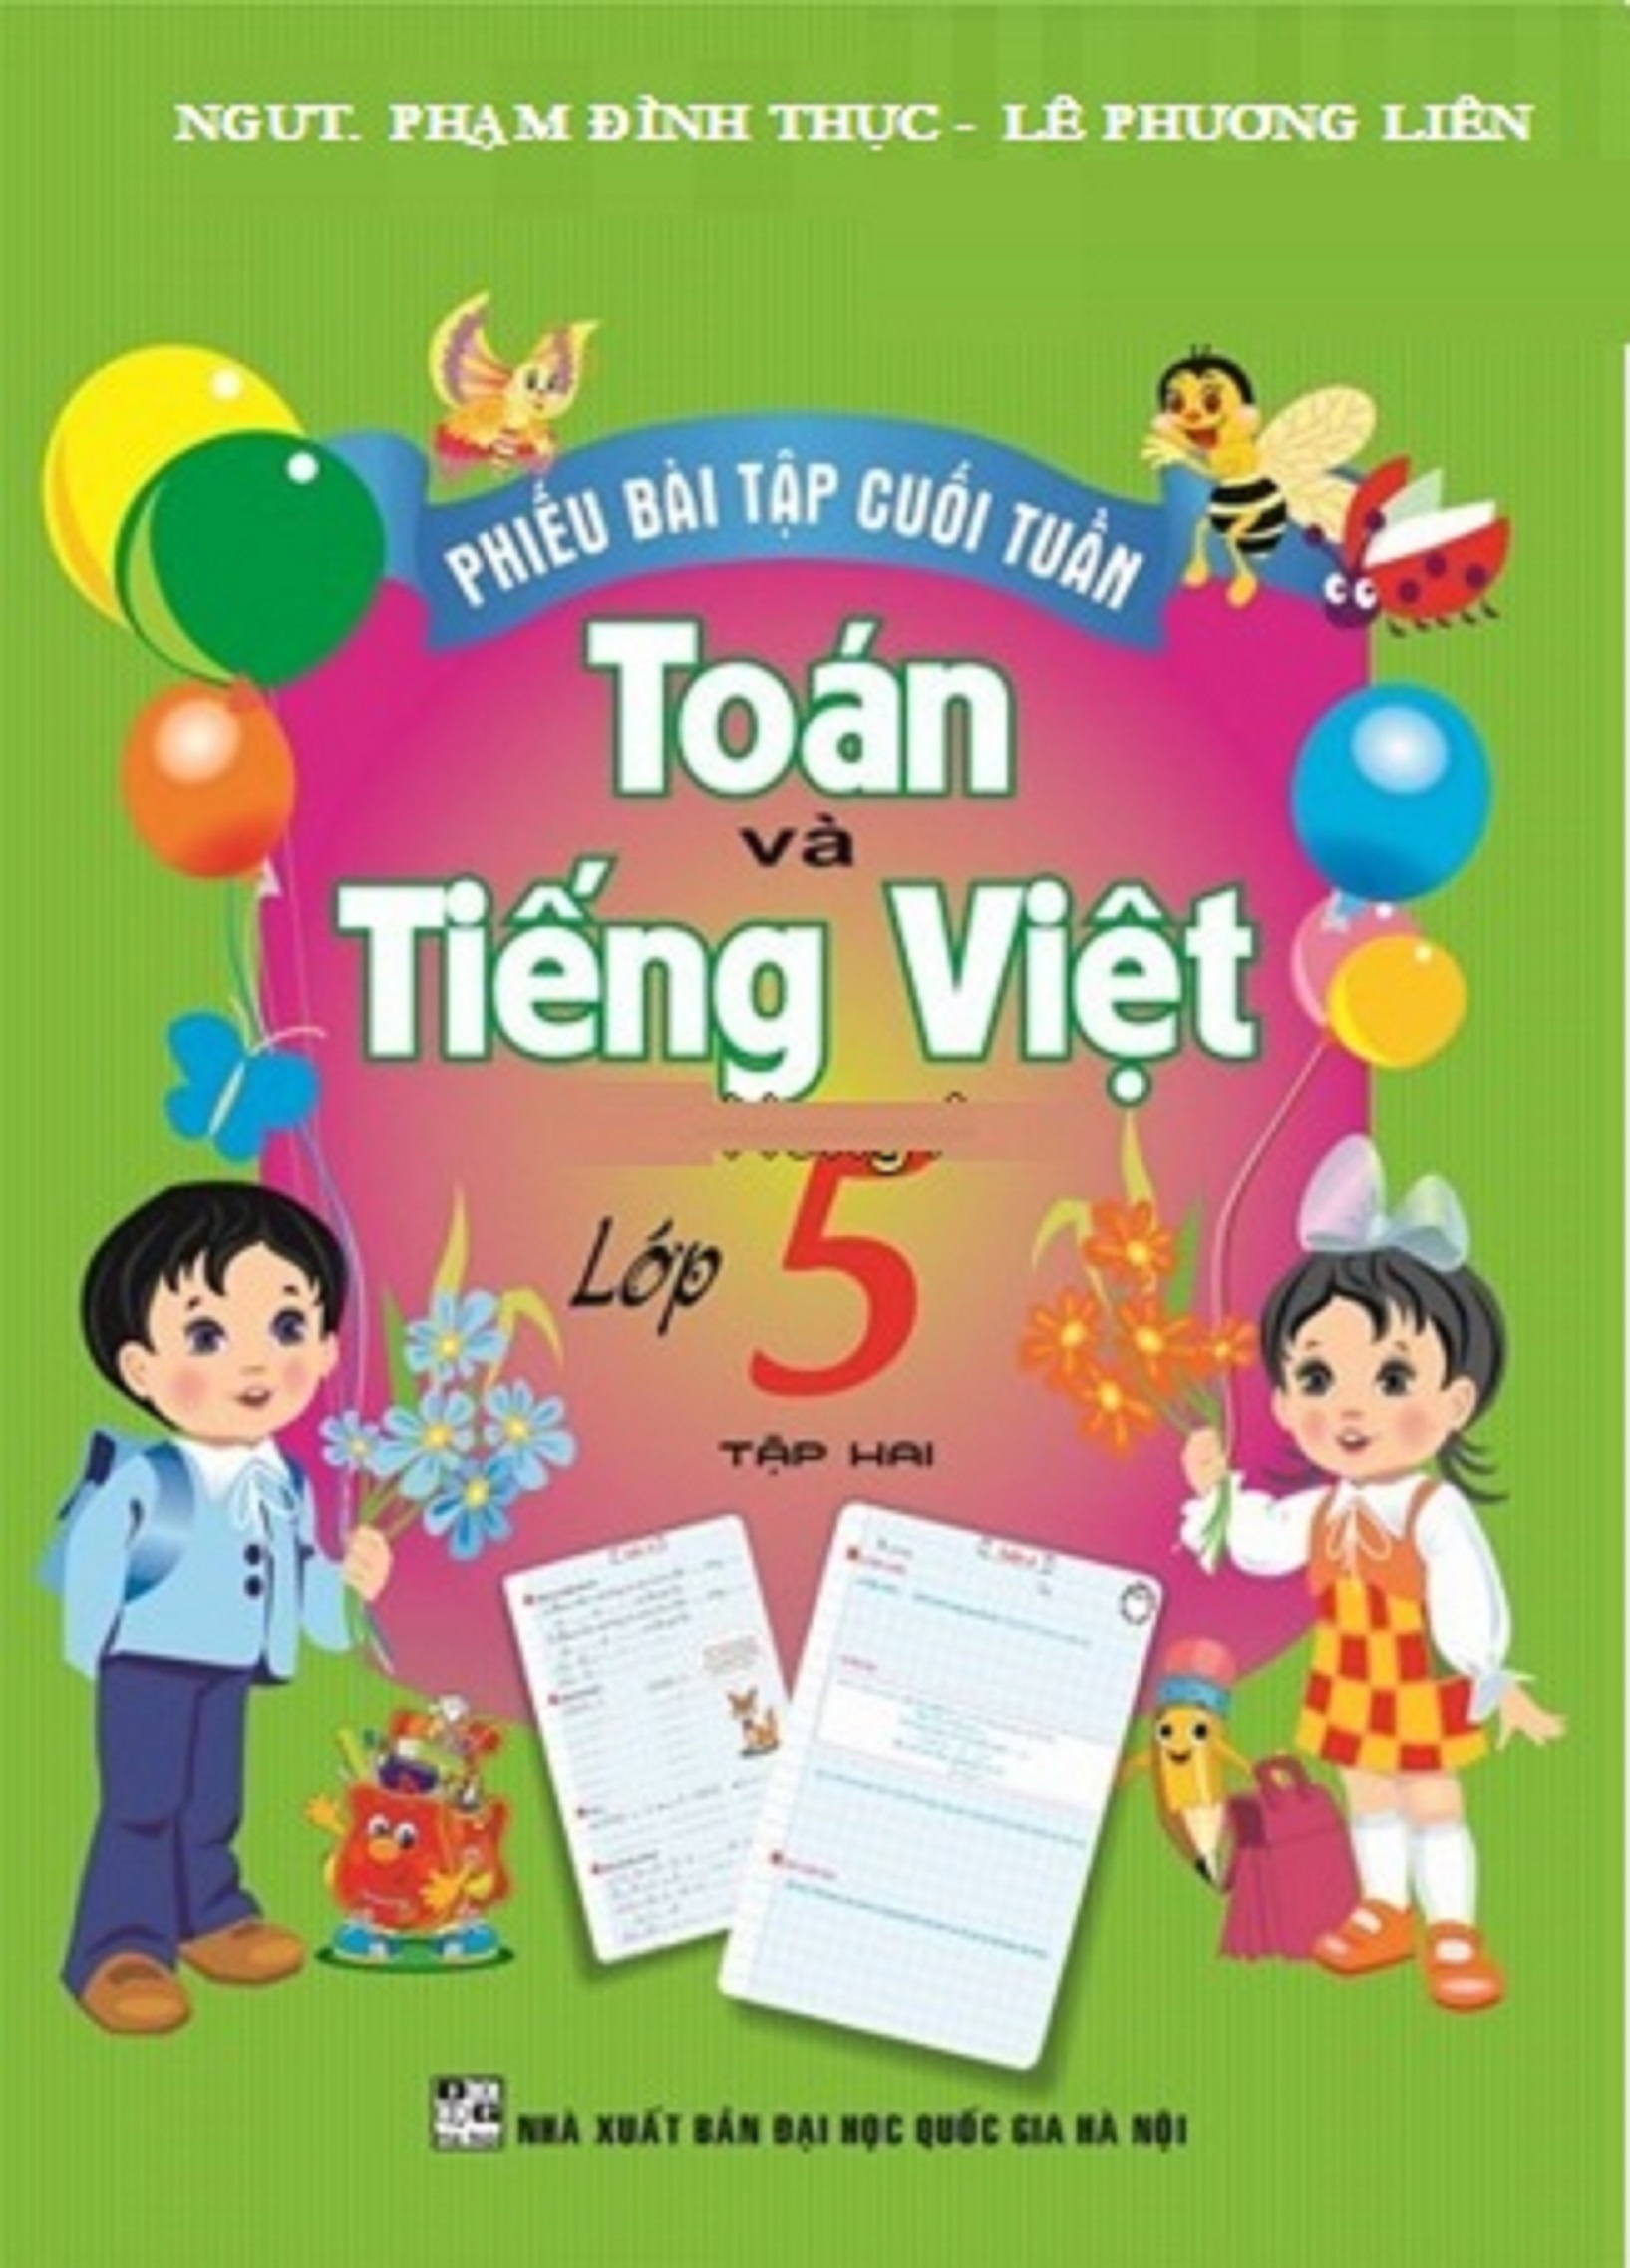 Phiếu Bài Tập Cuối Tuần Toán-Tiếng Việt Lớp 5 Tập 2 - HA